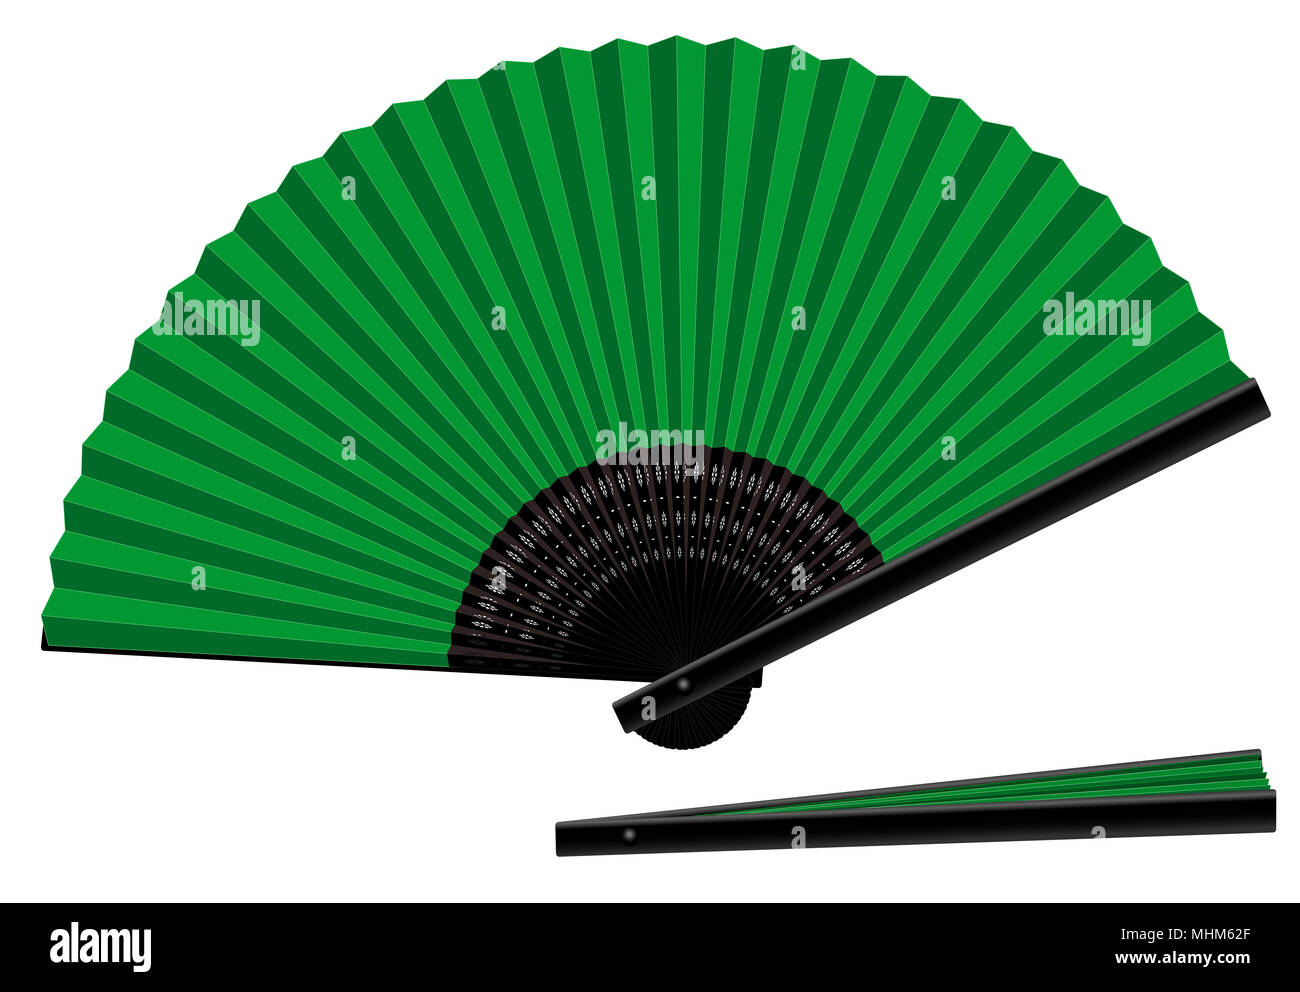 Handfächer, grün und schwarz, offen und geschlossen, dreidimensionale, realistisch-isolierte Vector Illustration auf weißem Hintergrund. Stockfoto